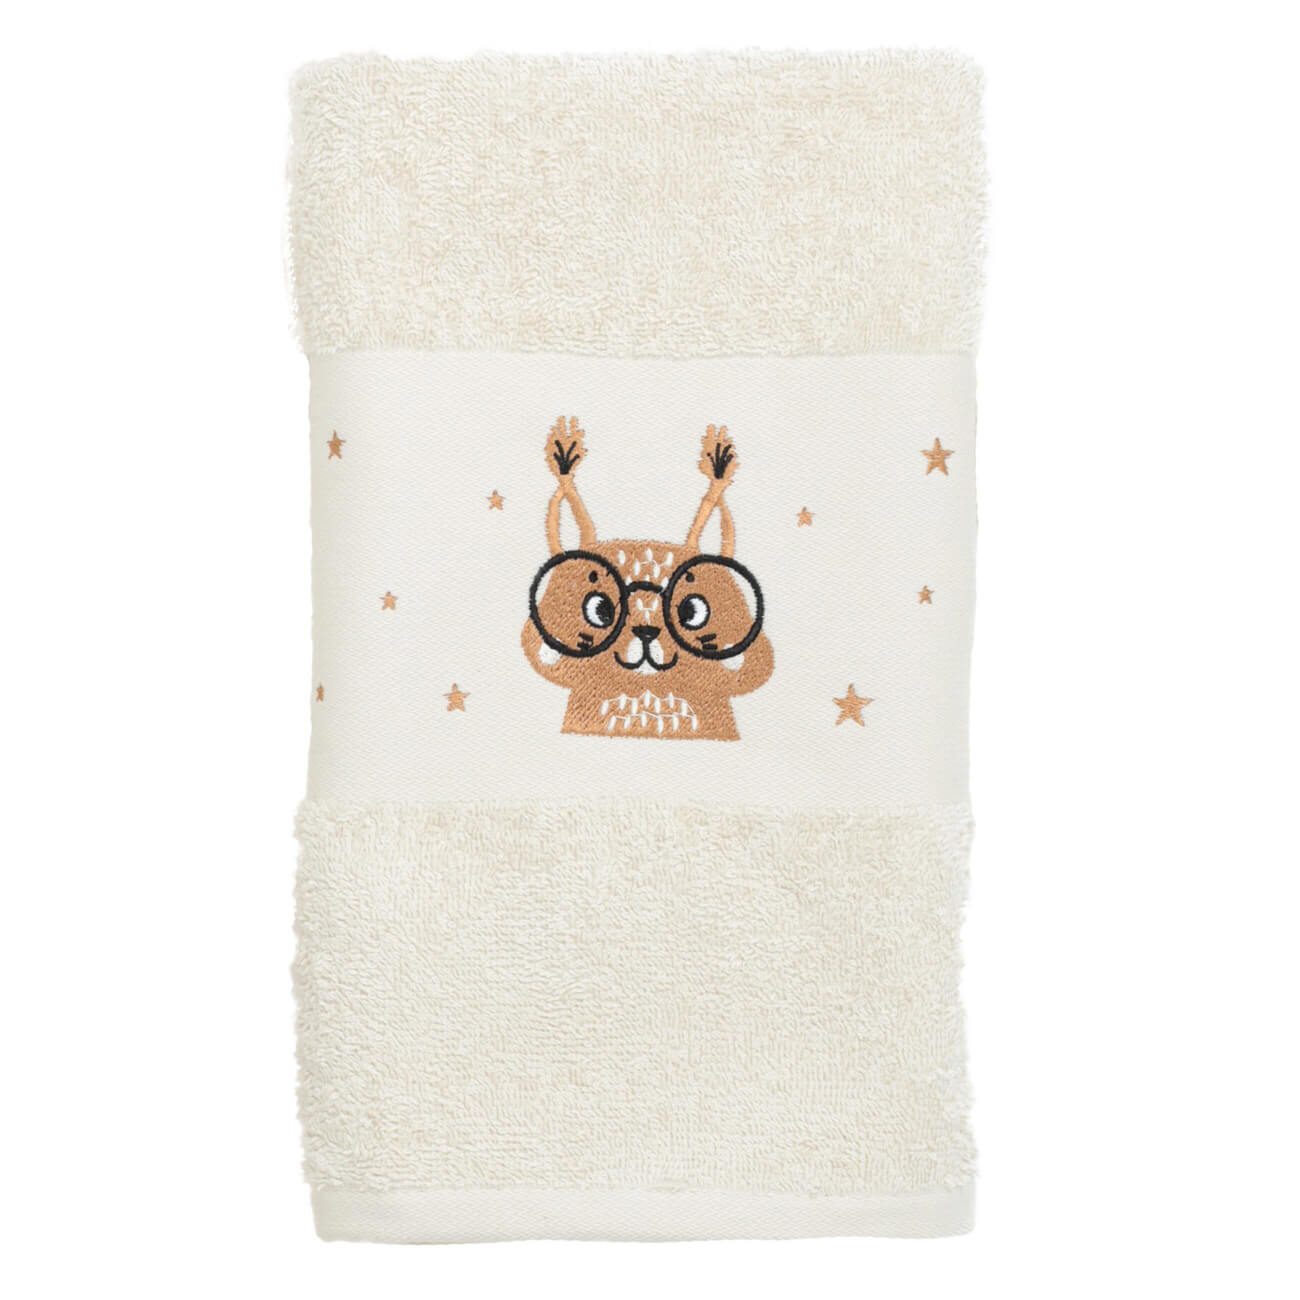 Children's towel, 70x120 cm, cotton, beige, Squirrel, Forest Animals изображение № 1